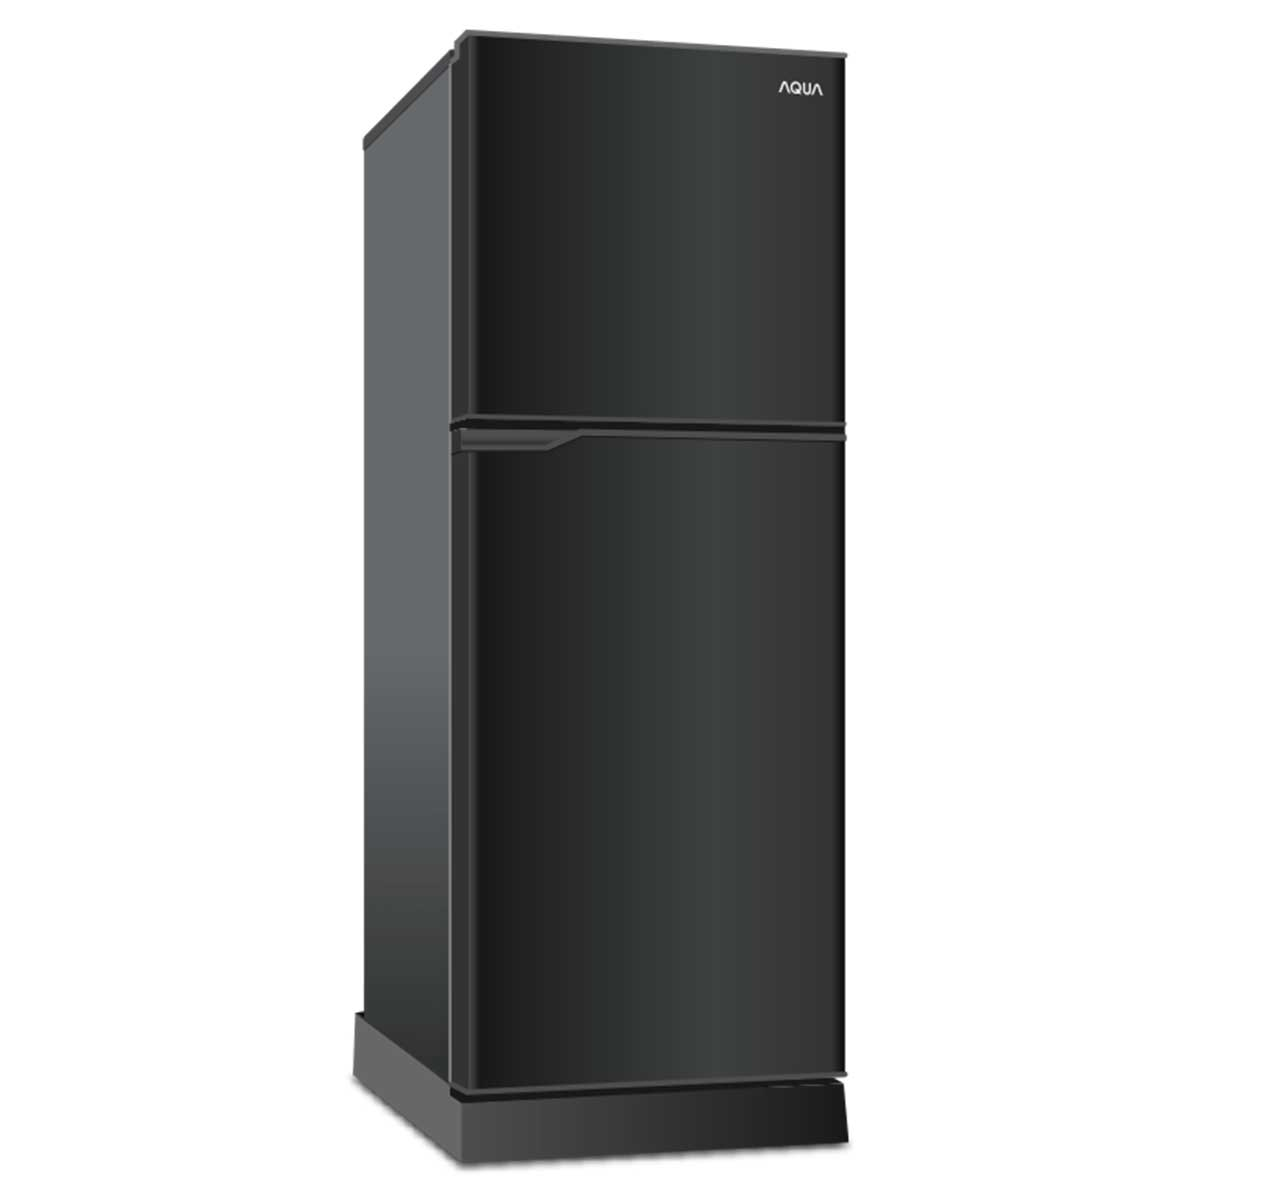 [GIAO HÀNG XUYÊN TẾT]TRẢ GÓP 0% - Tủ lạnh Aqua 130 lít AQR-T150FA BS công nghệ làm lạnh đa chiều...